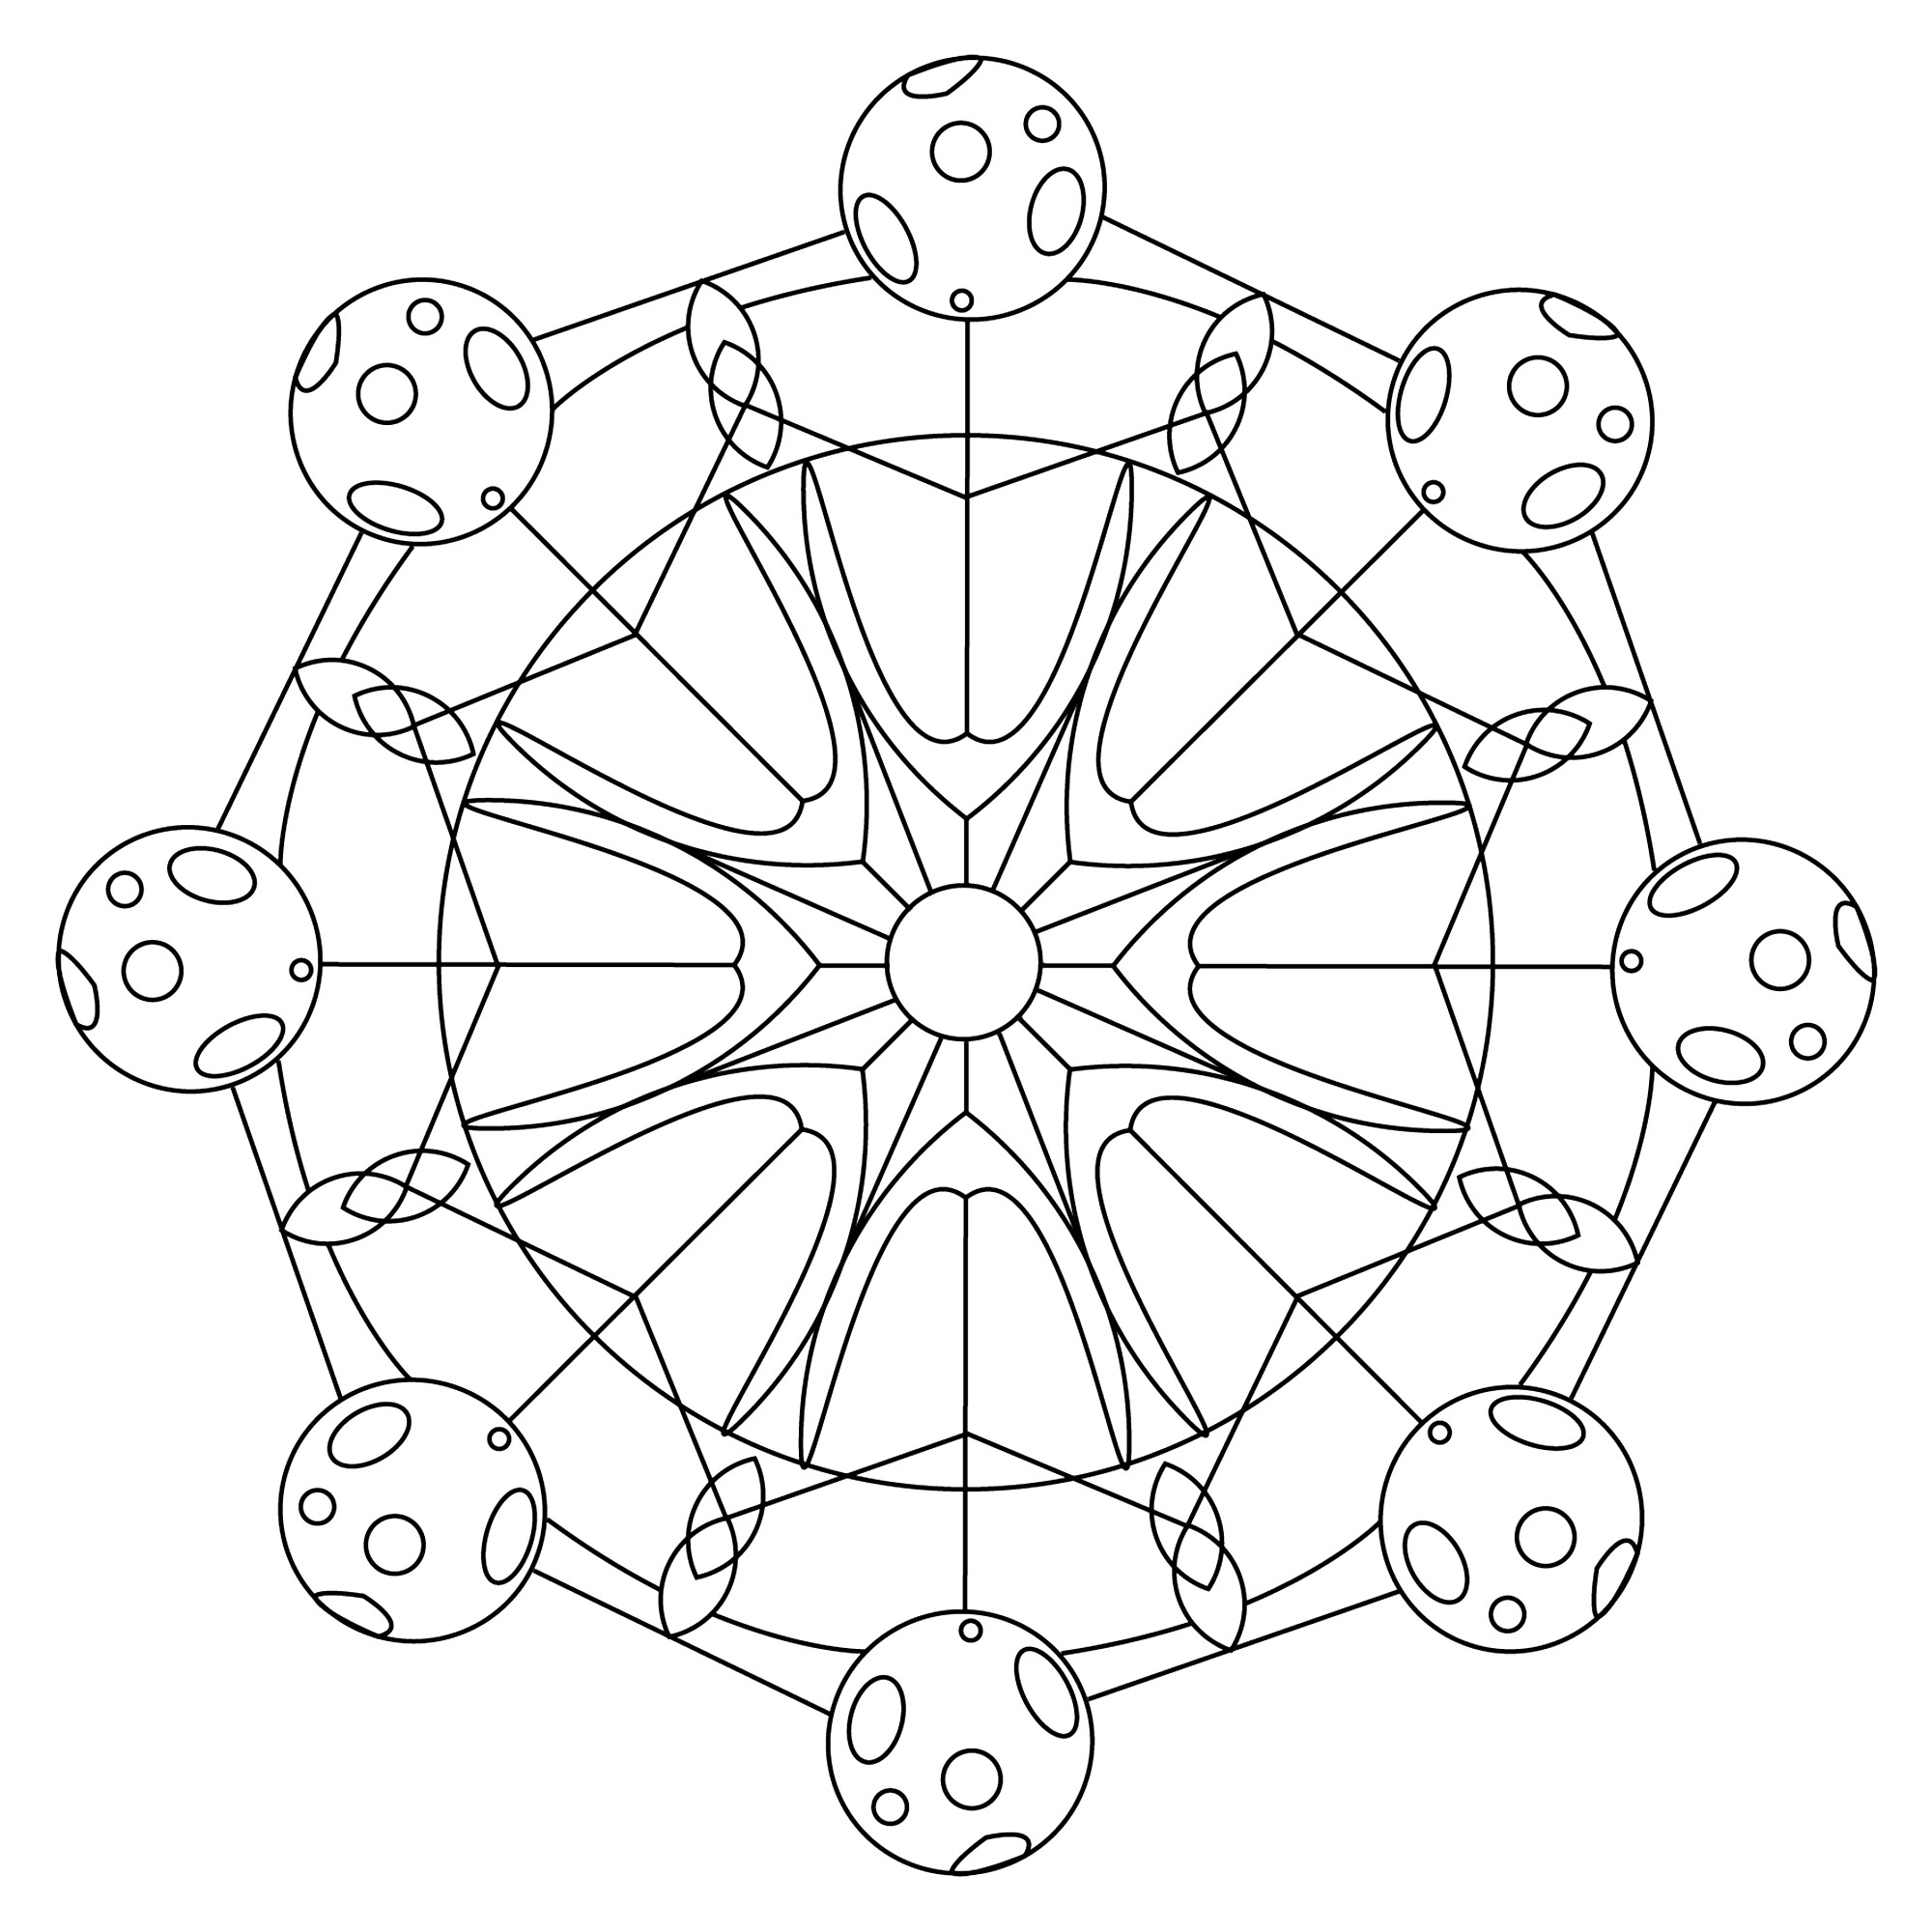 Joli Mandala comportant en son centre la symbolique du soleil, et à chaque extrémité une représentation de la lune